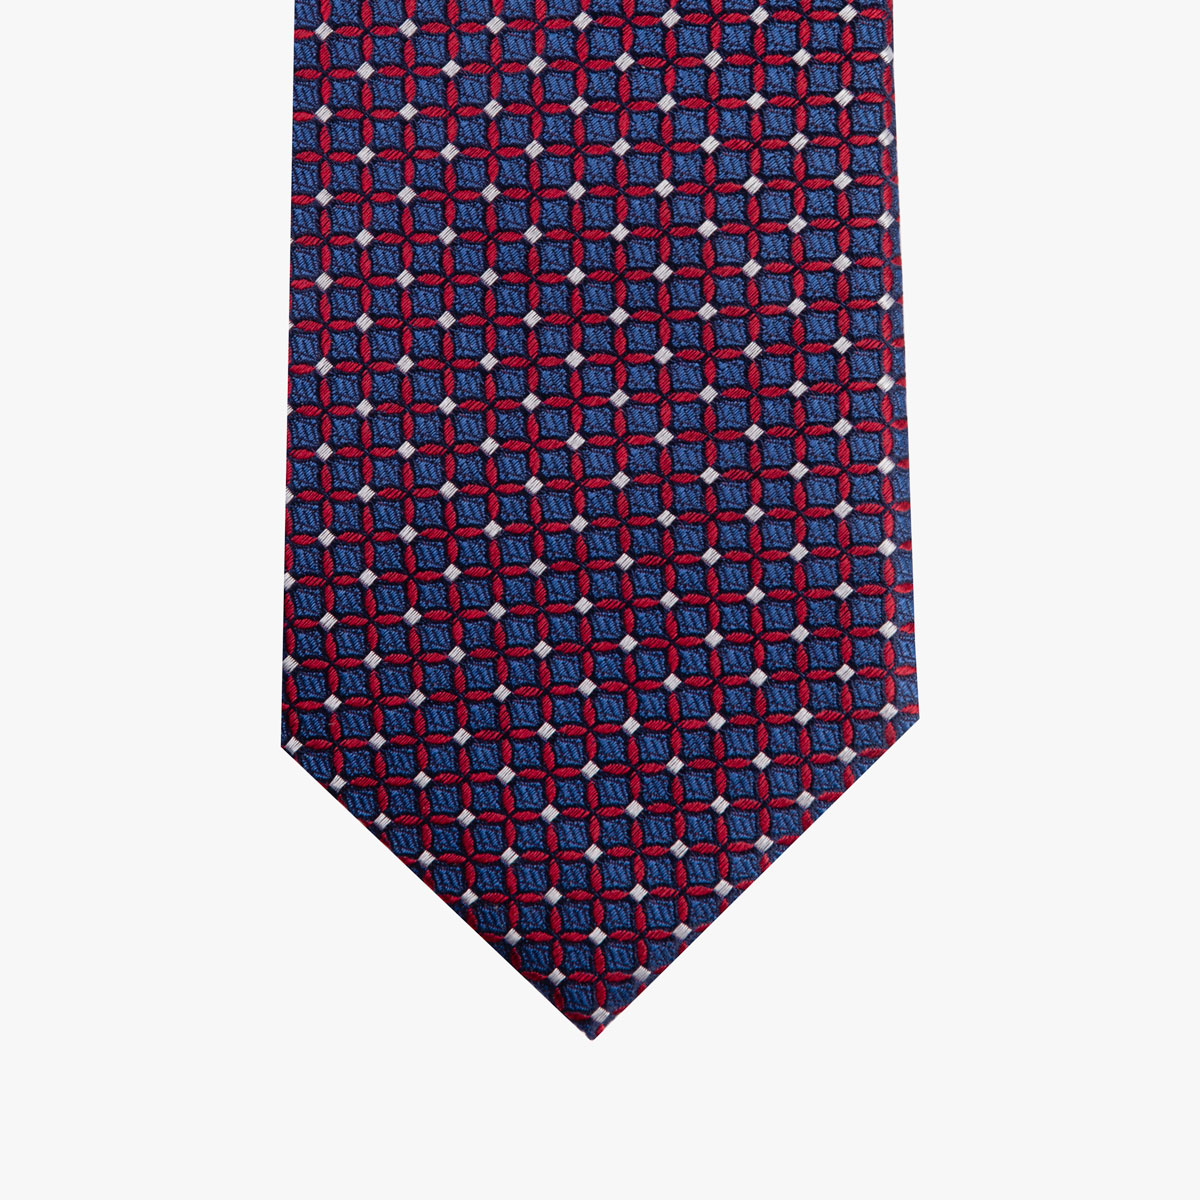 Krawatte aus Seide in dunkelblau mit rotem Muster